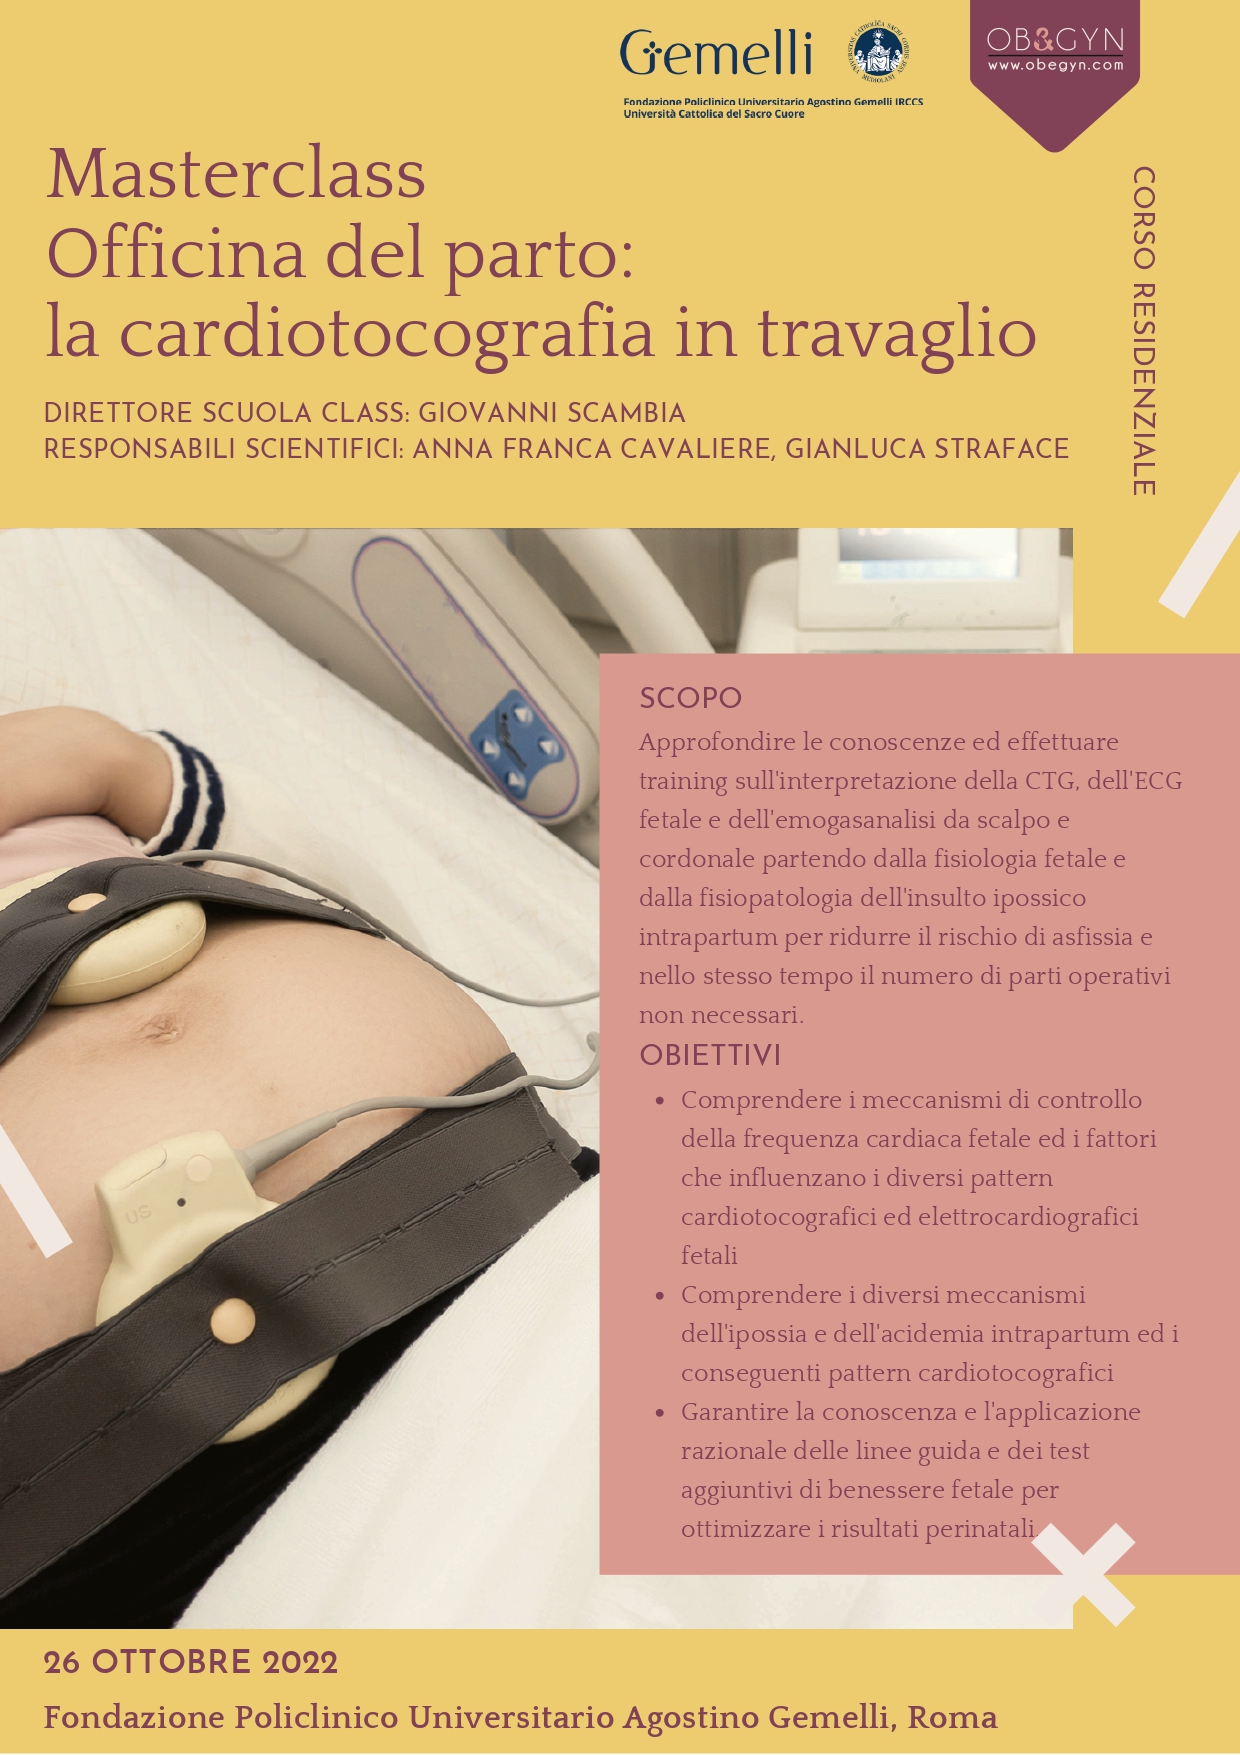 Programma Masterclass Officina del parto: la cardiotocografia in travaglio - Roma